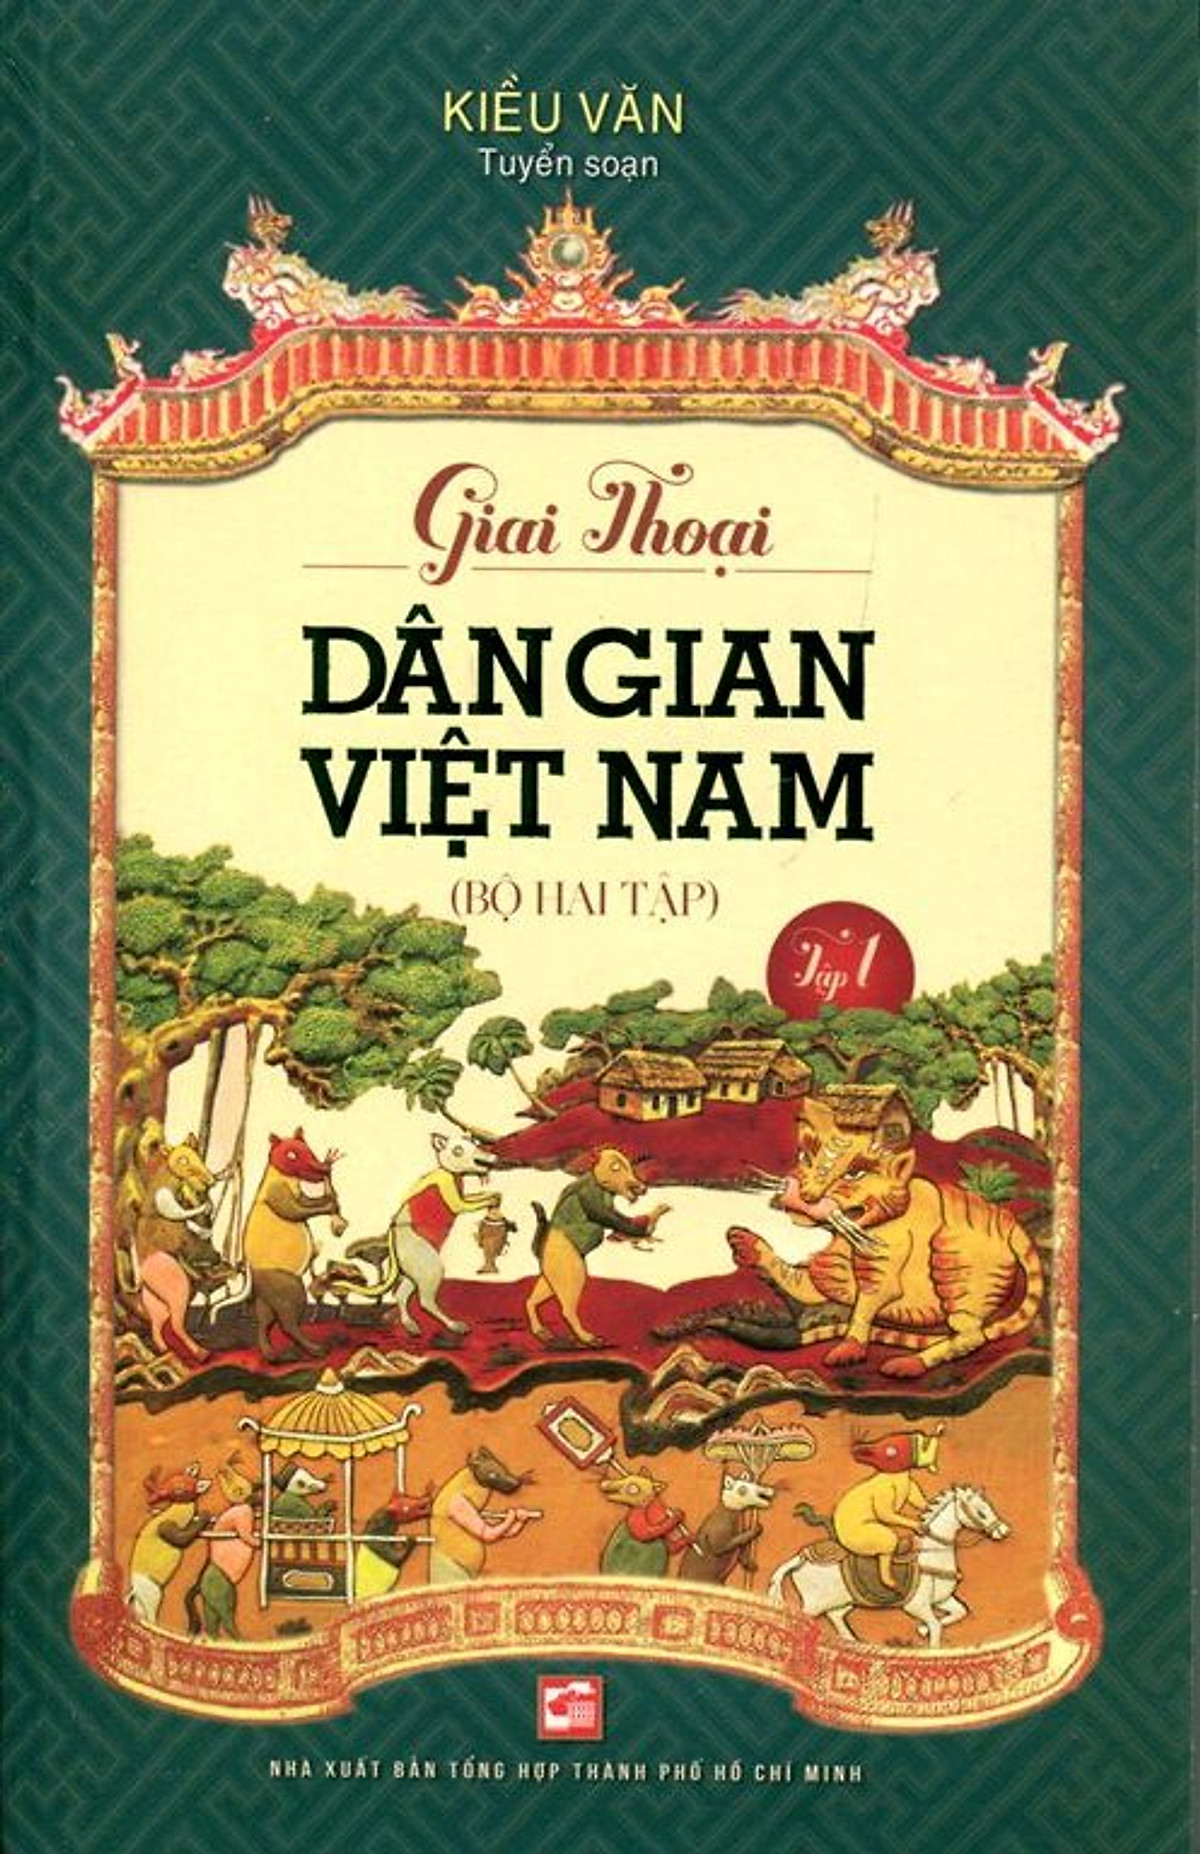 Giai Thoại Văn Học Dân Gian Việt Nam (Tập 1)